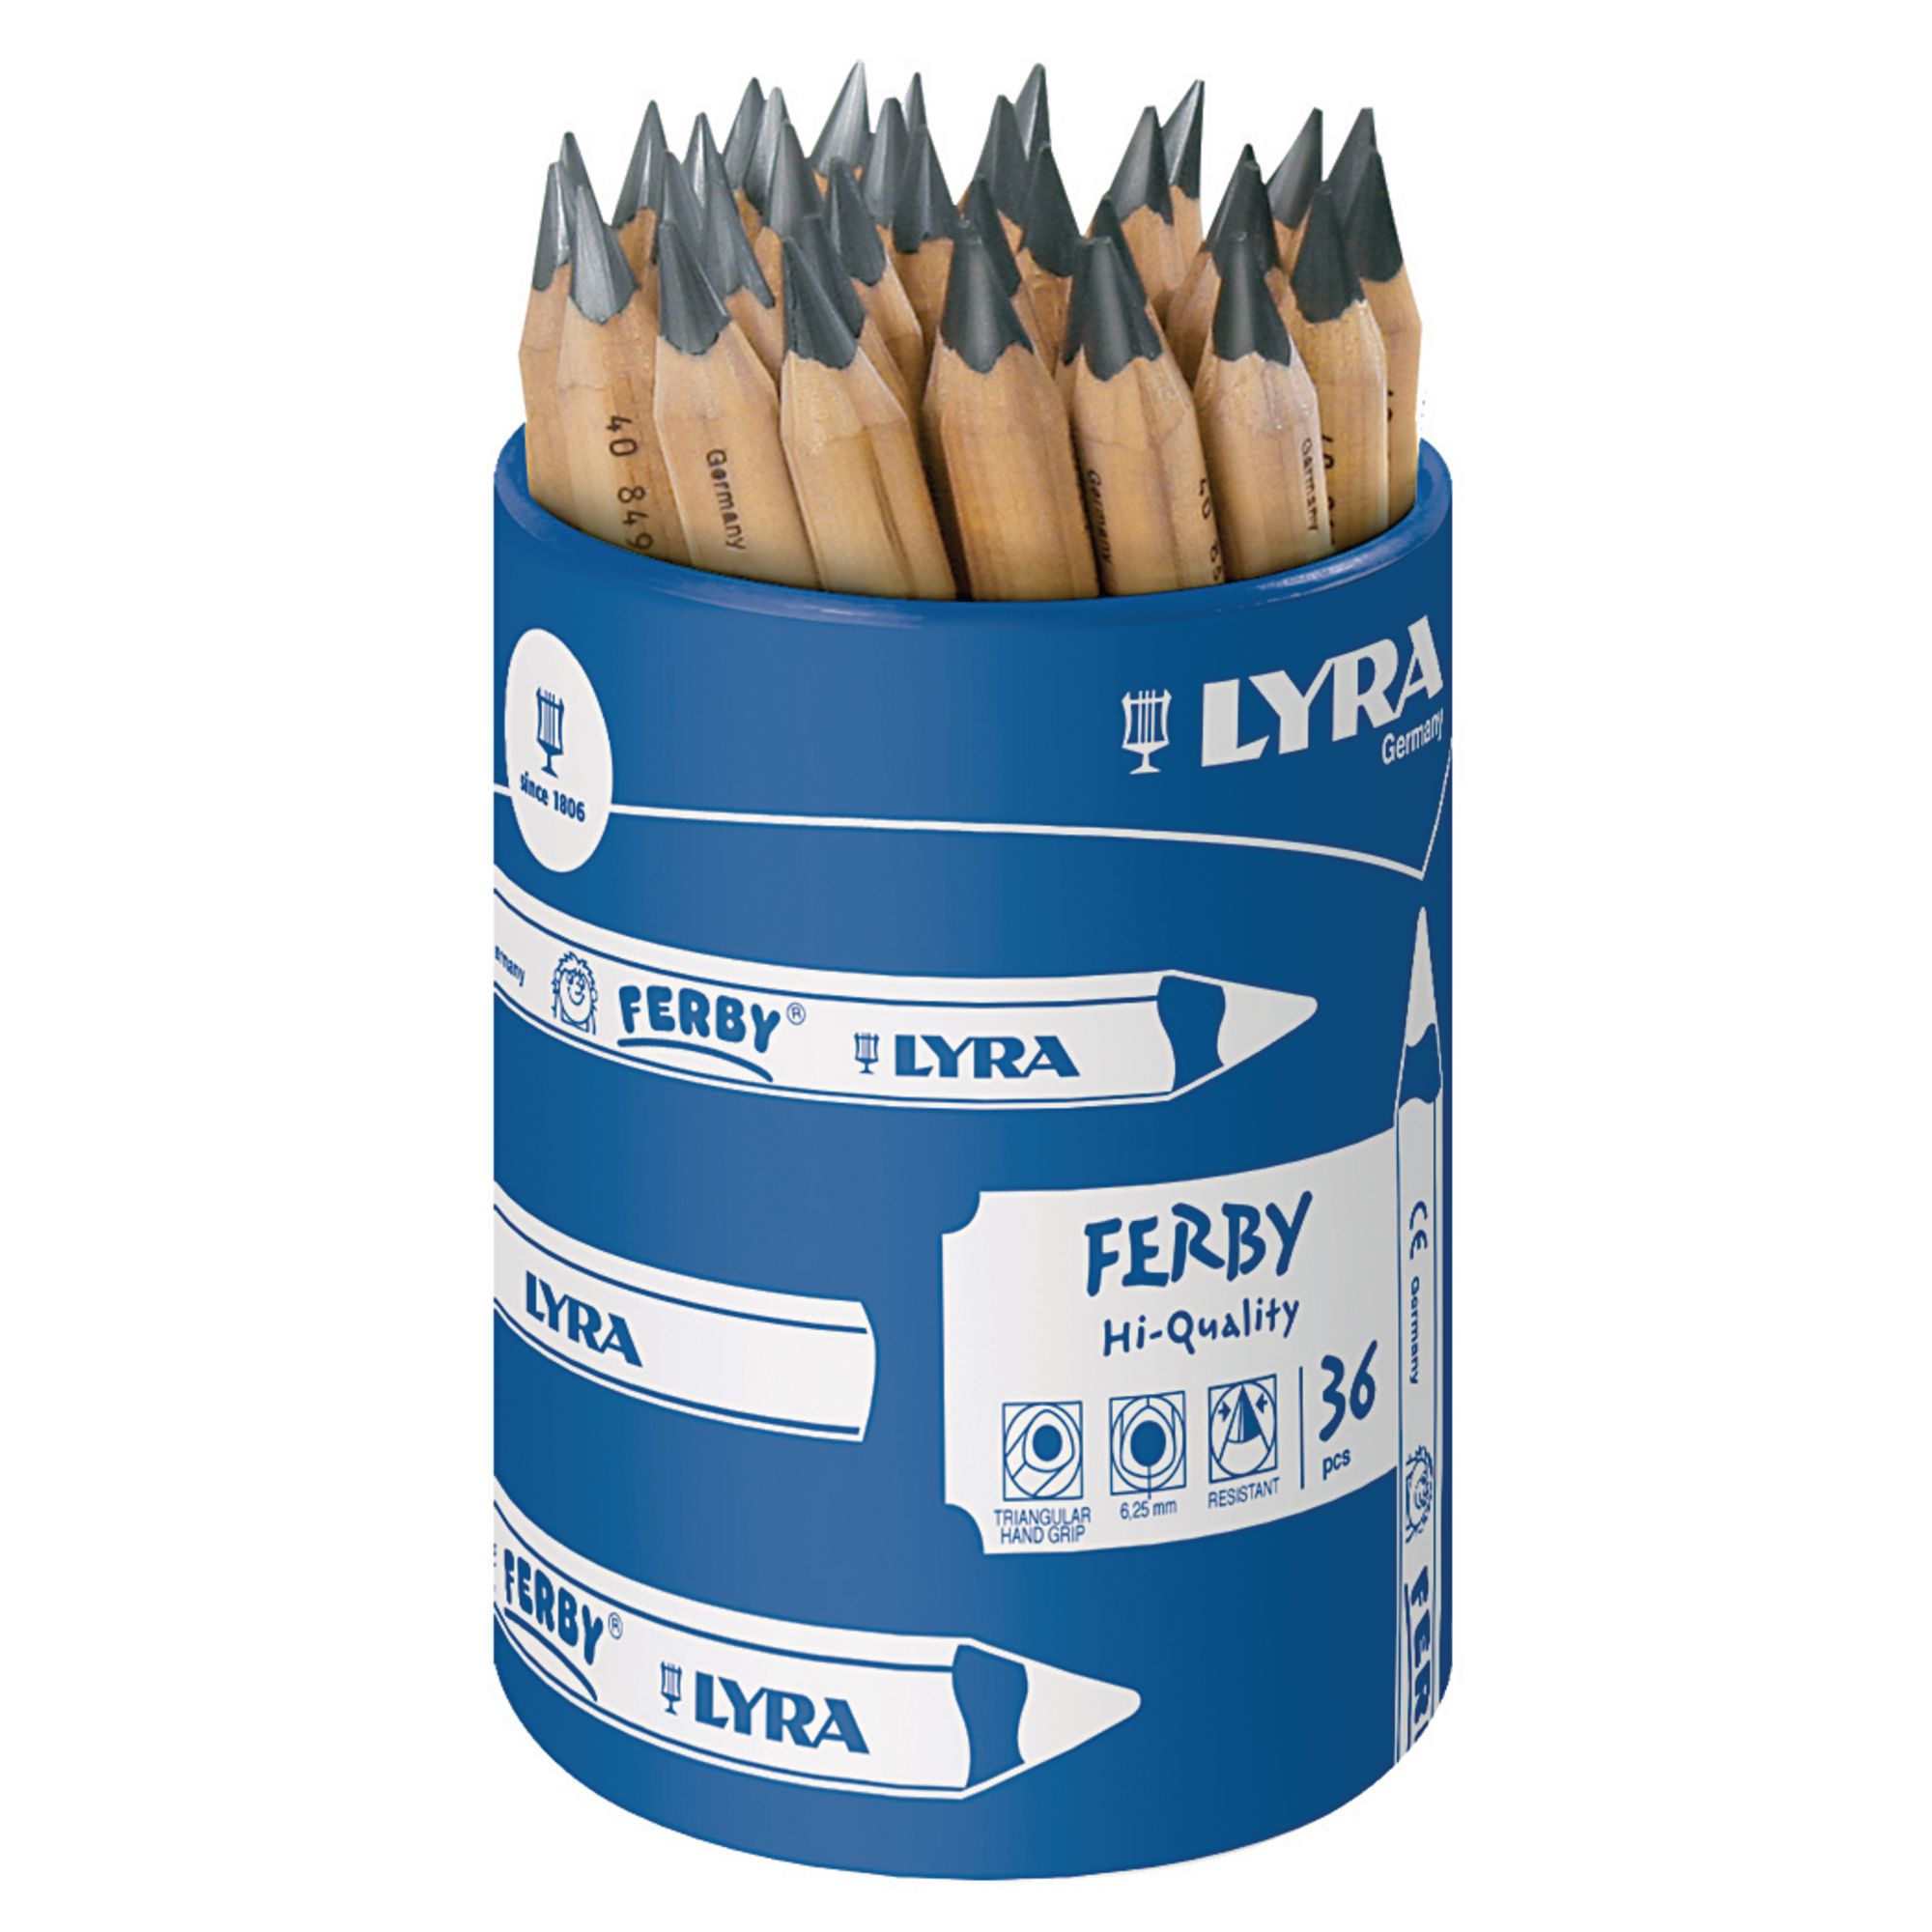 Lyra Ferby Pencils